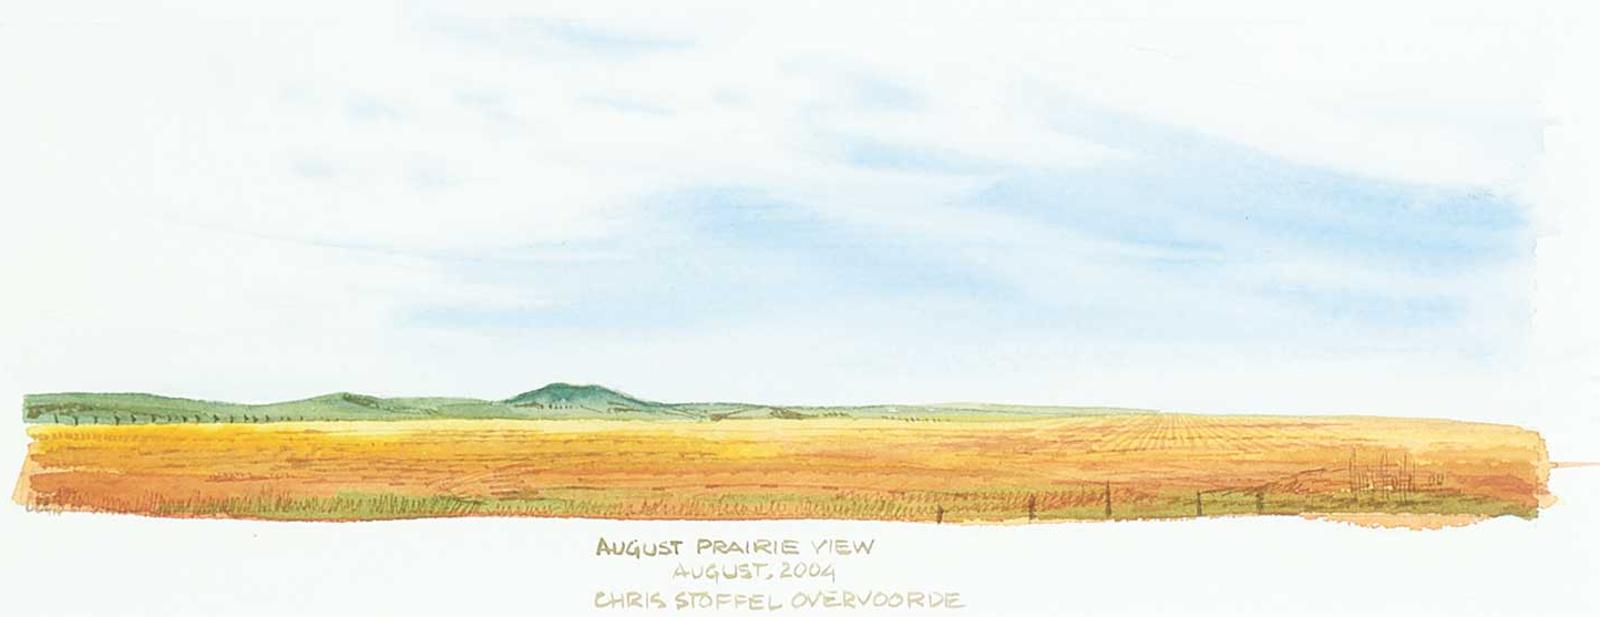 Chris Stoffel Overvoorde - August Prairie View